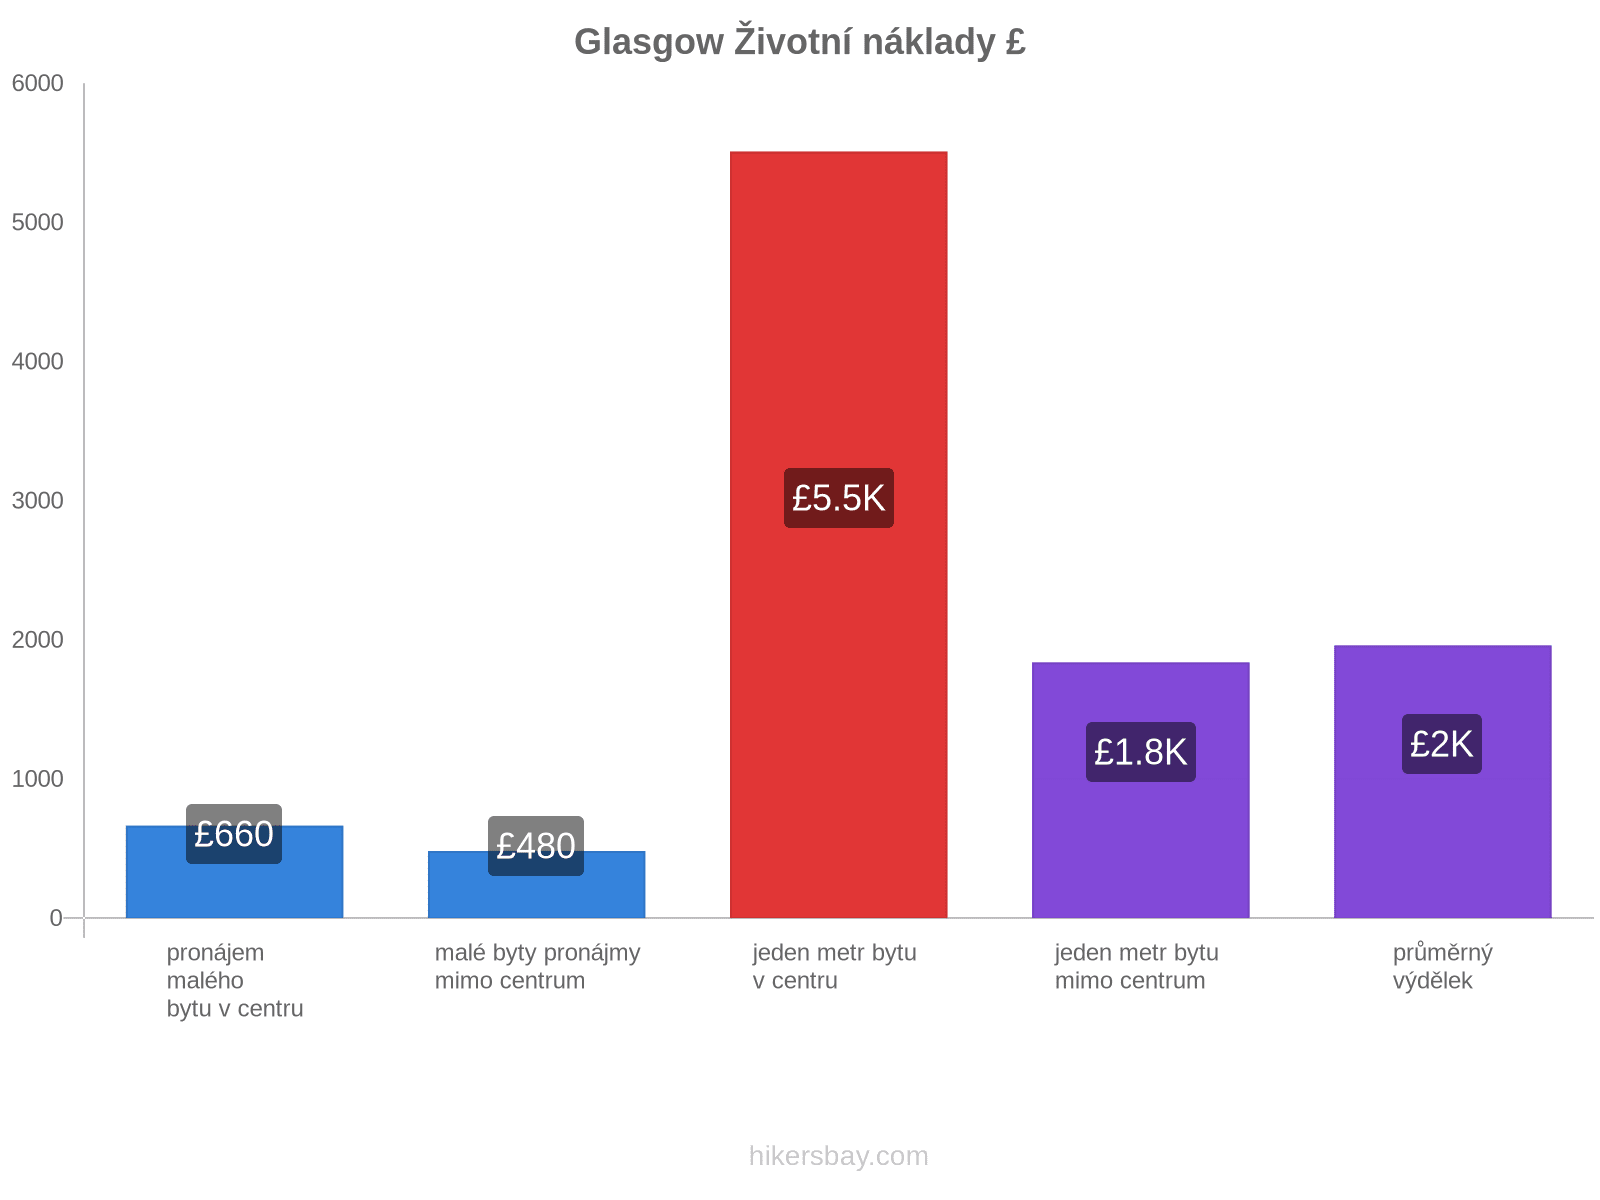 Glasgow životní náklady hikersbay.com